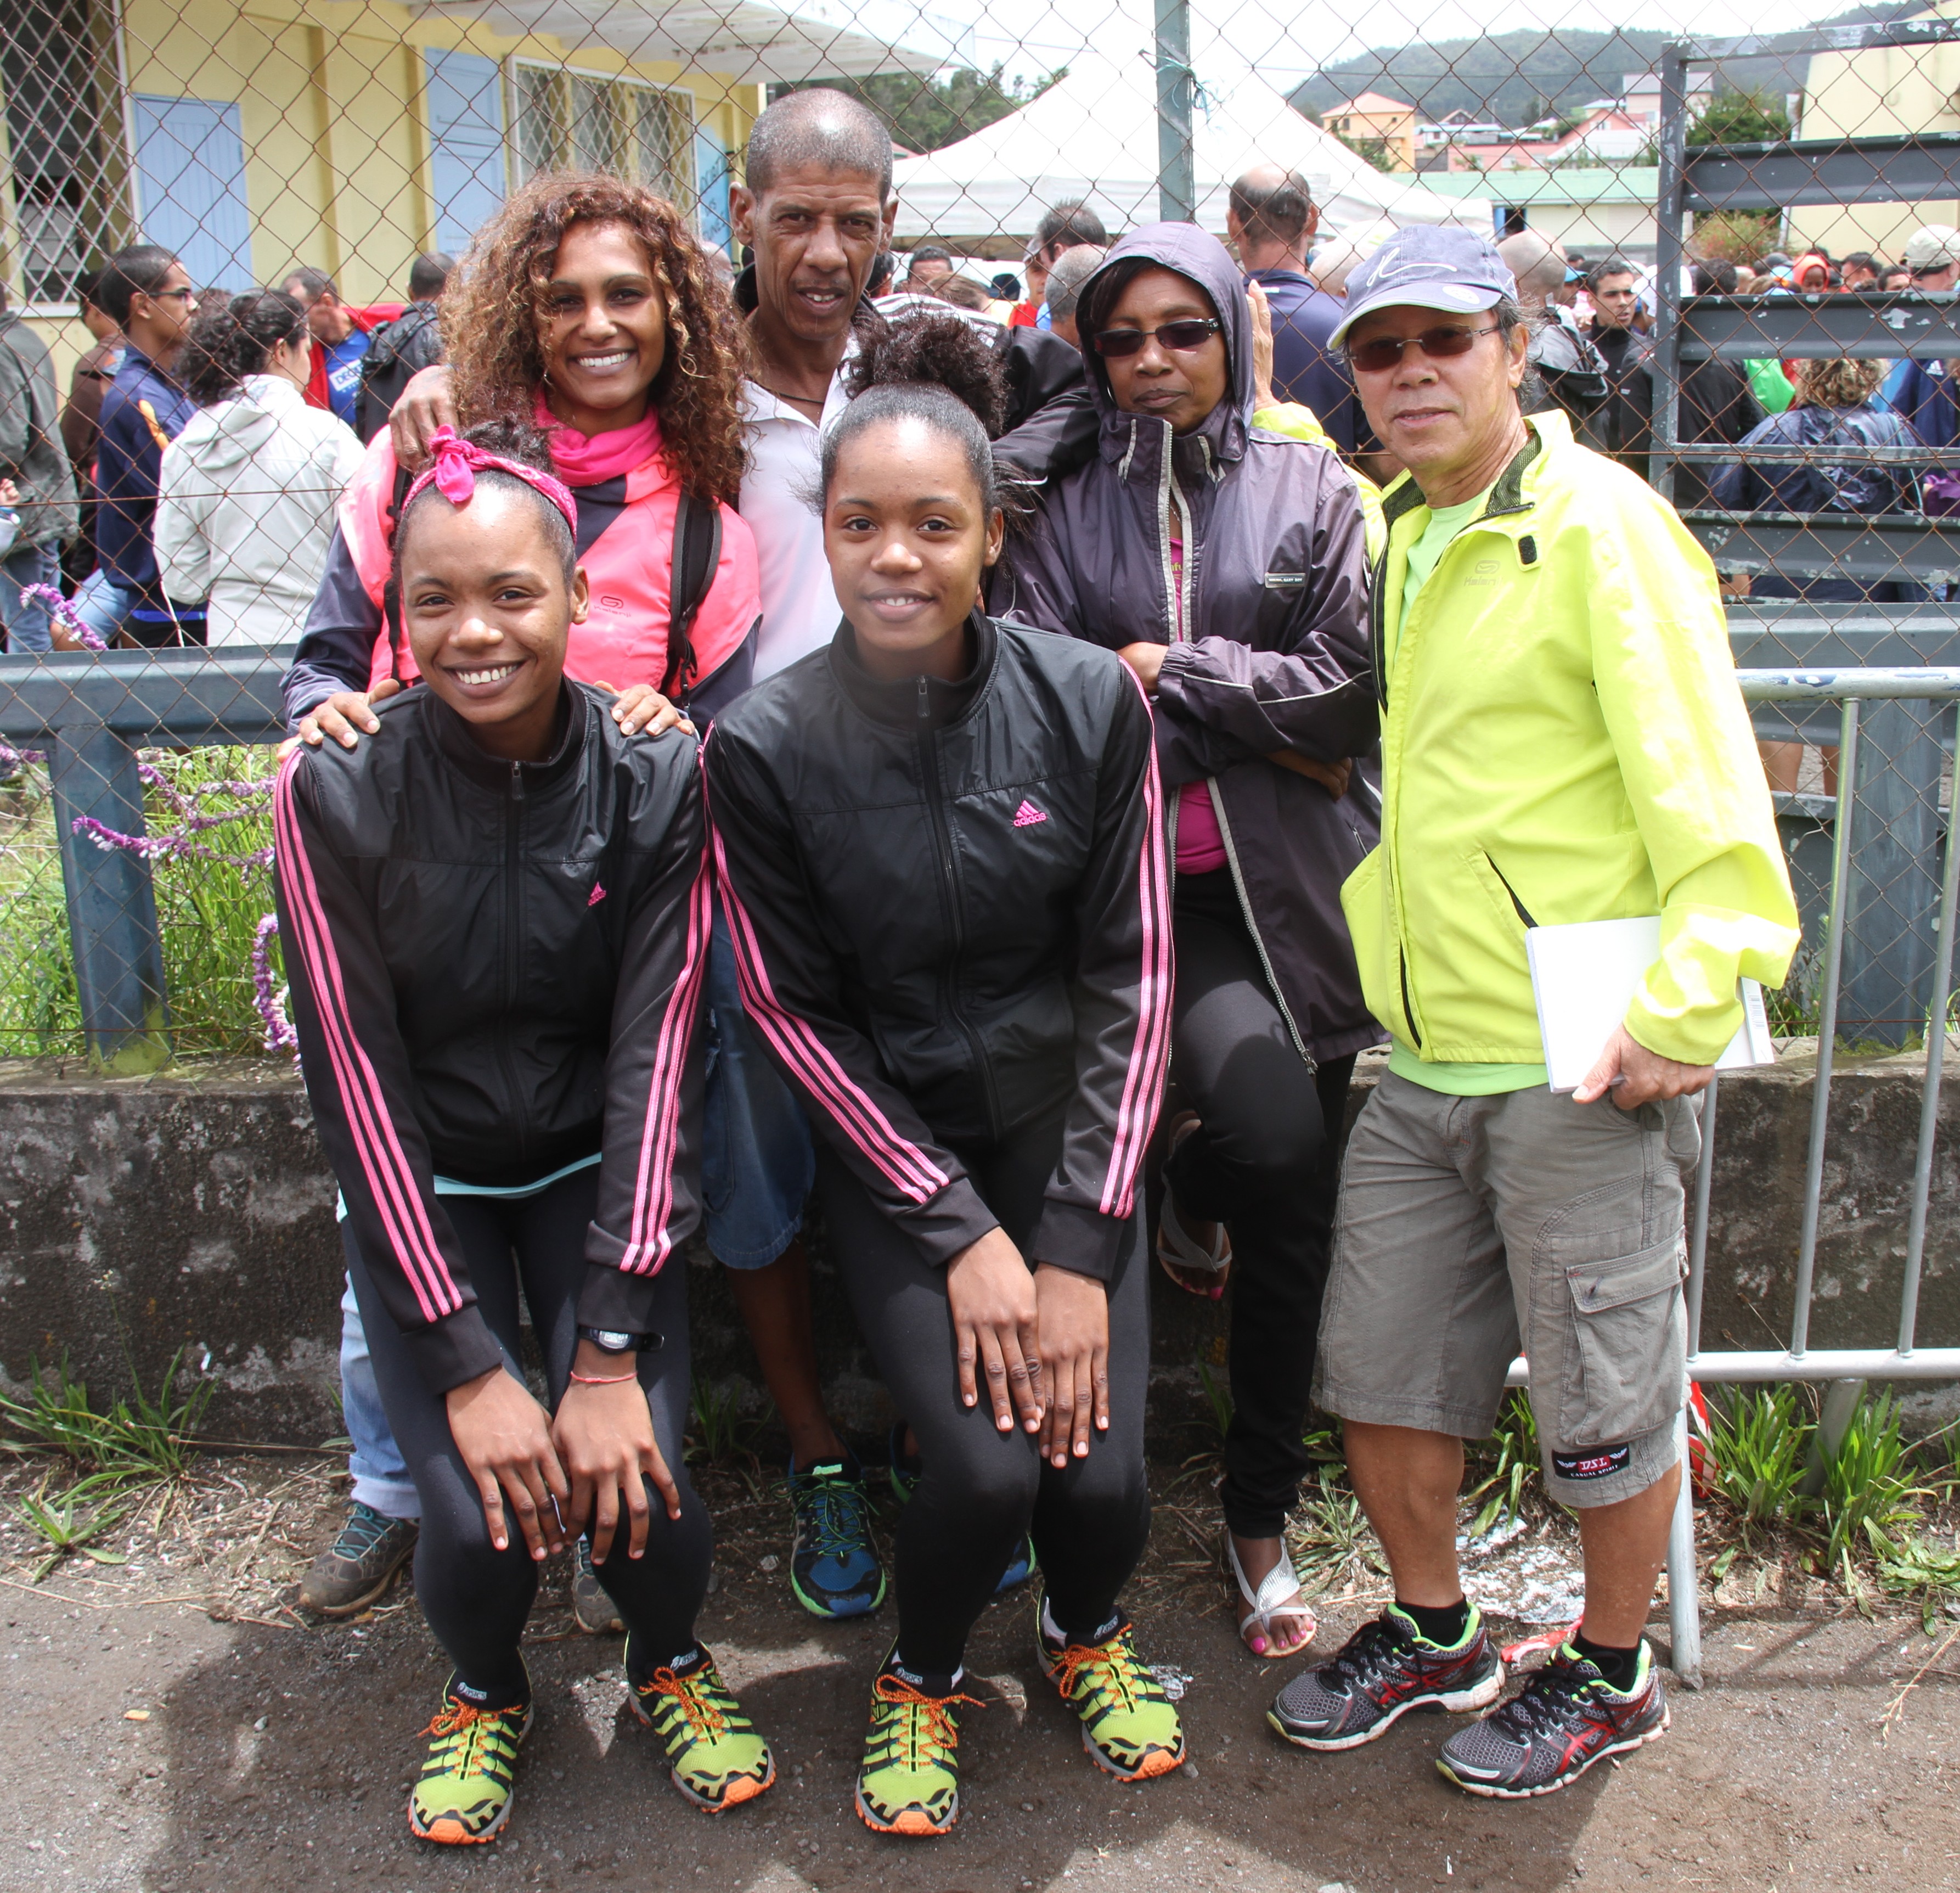 Des athlètes de Rodrigues étaient venues qu'en tant que spectatrices. Avec cependant une forte envie de courir...